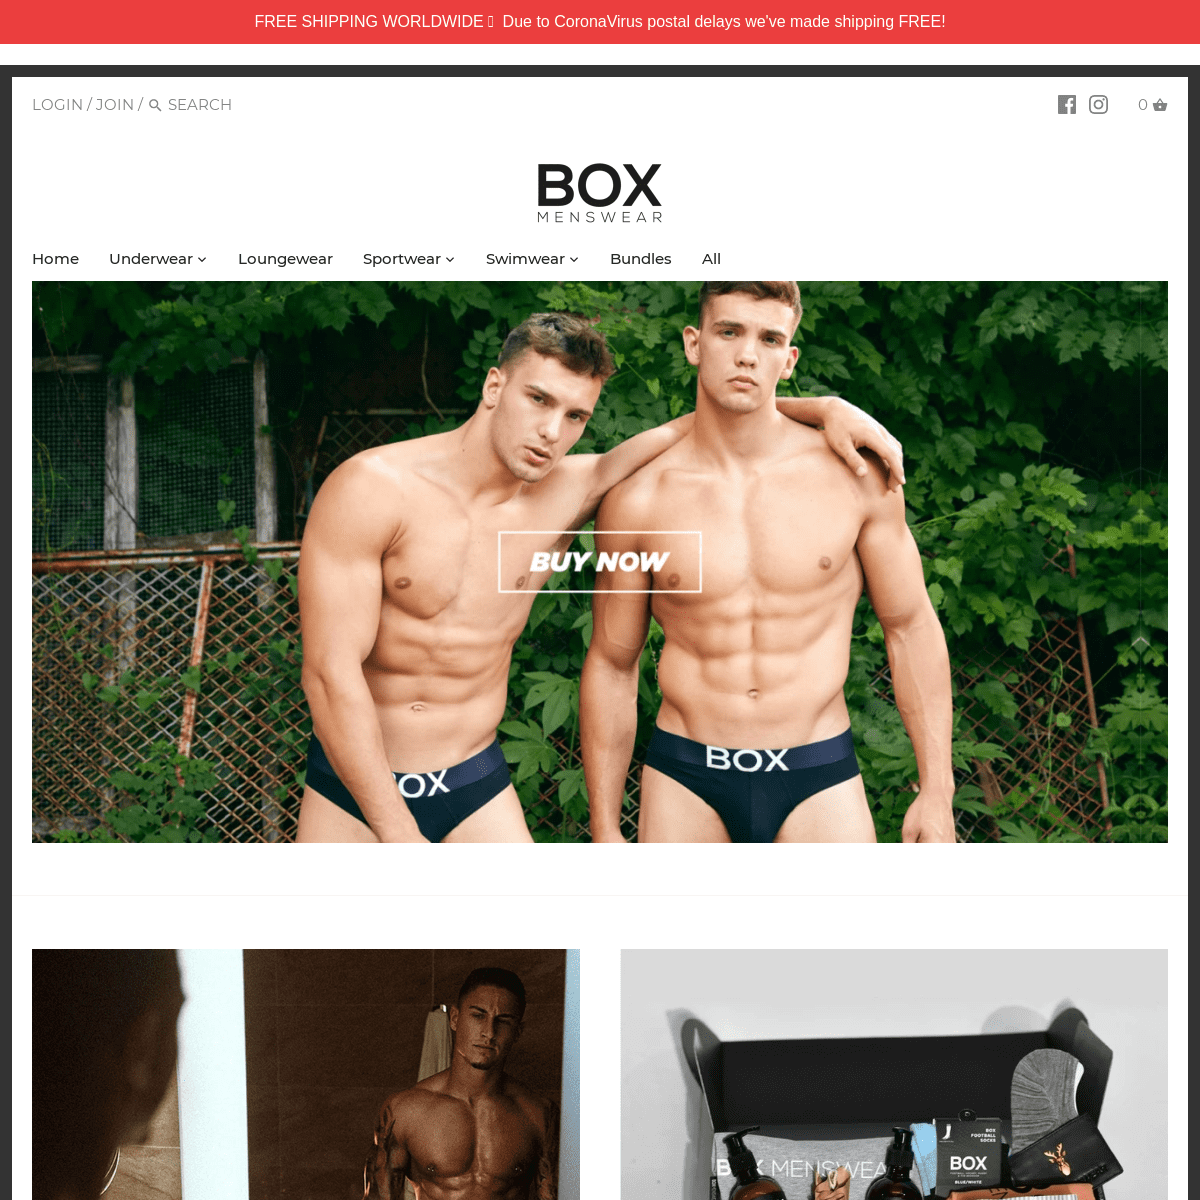 A complete backup of boxmenswear.com